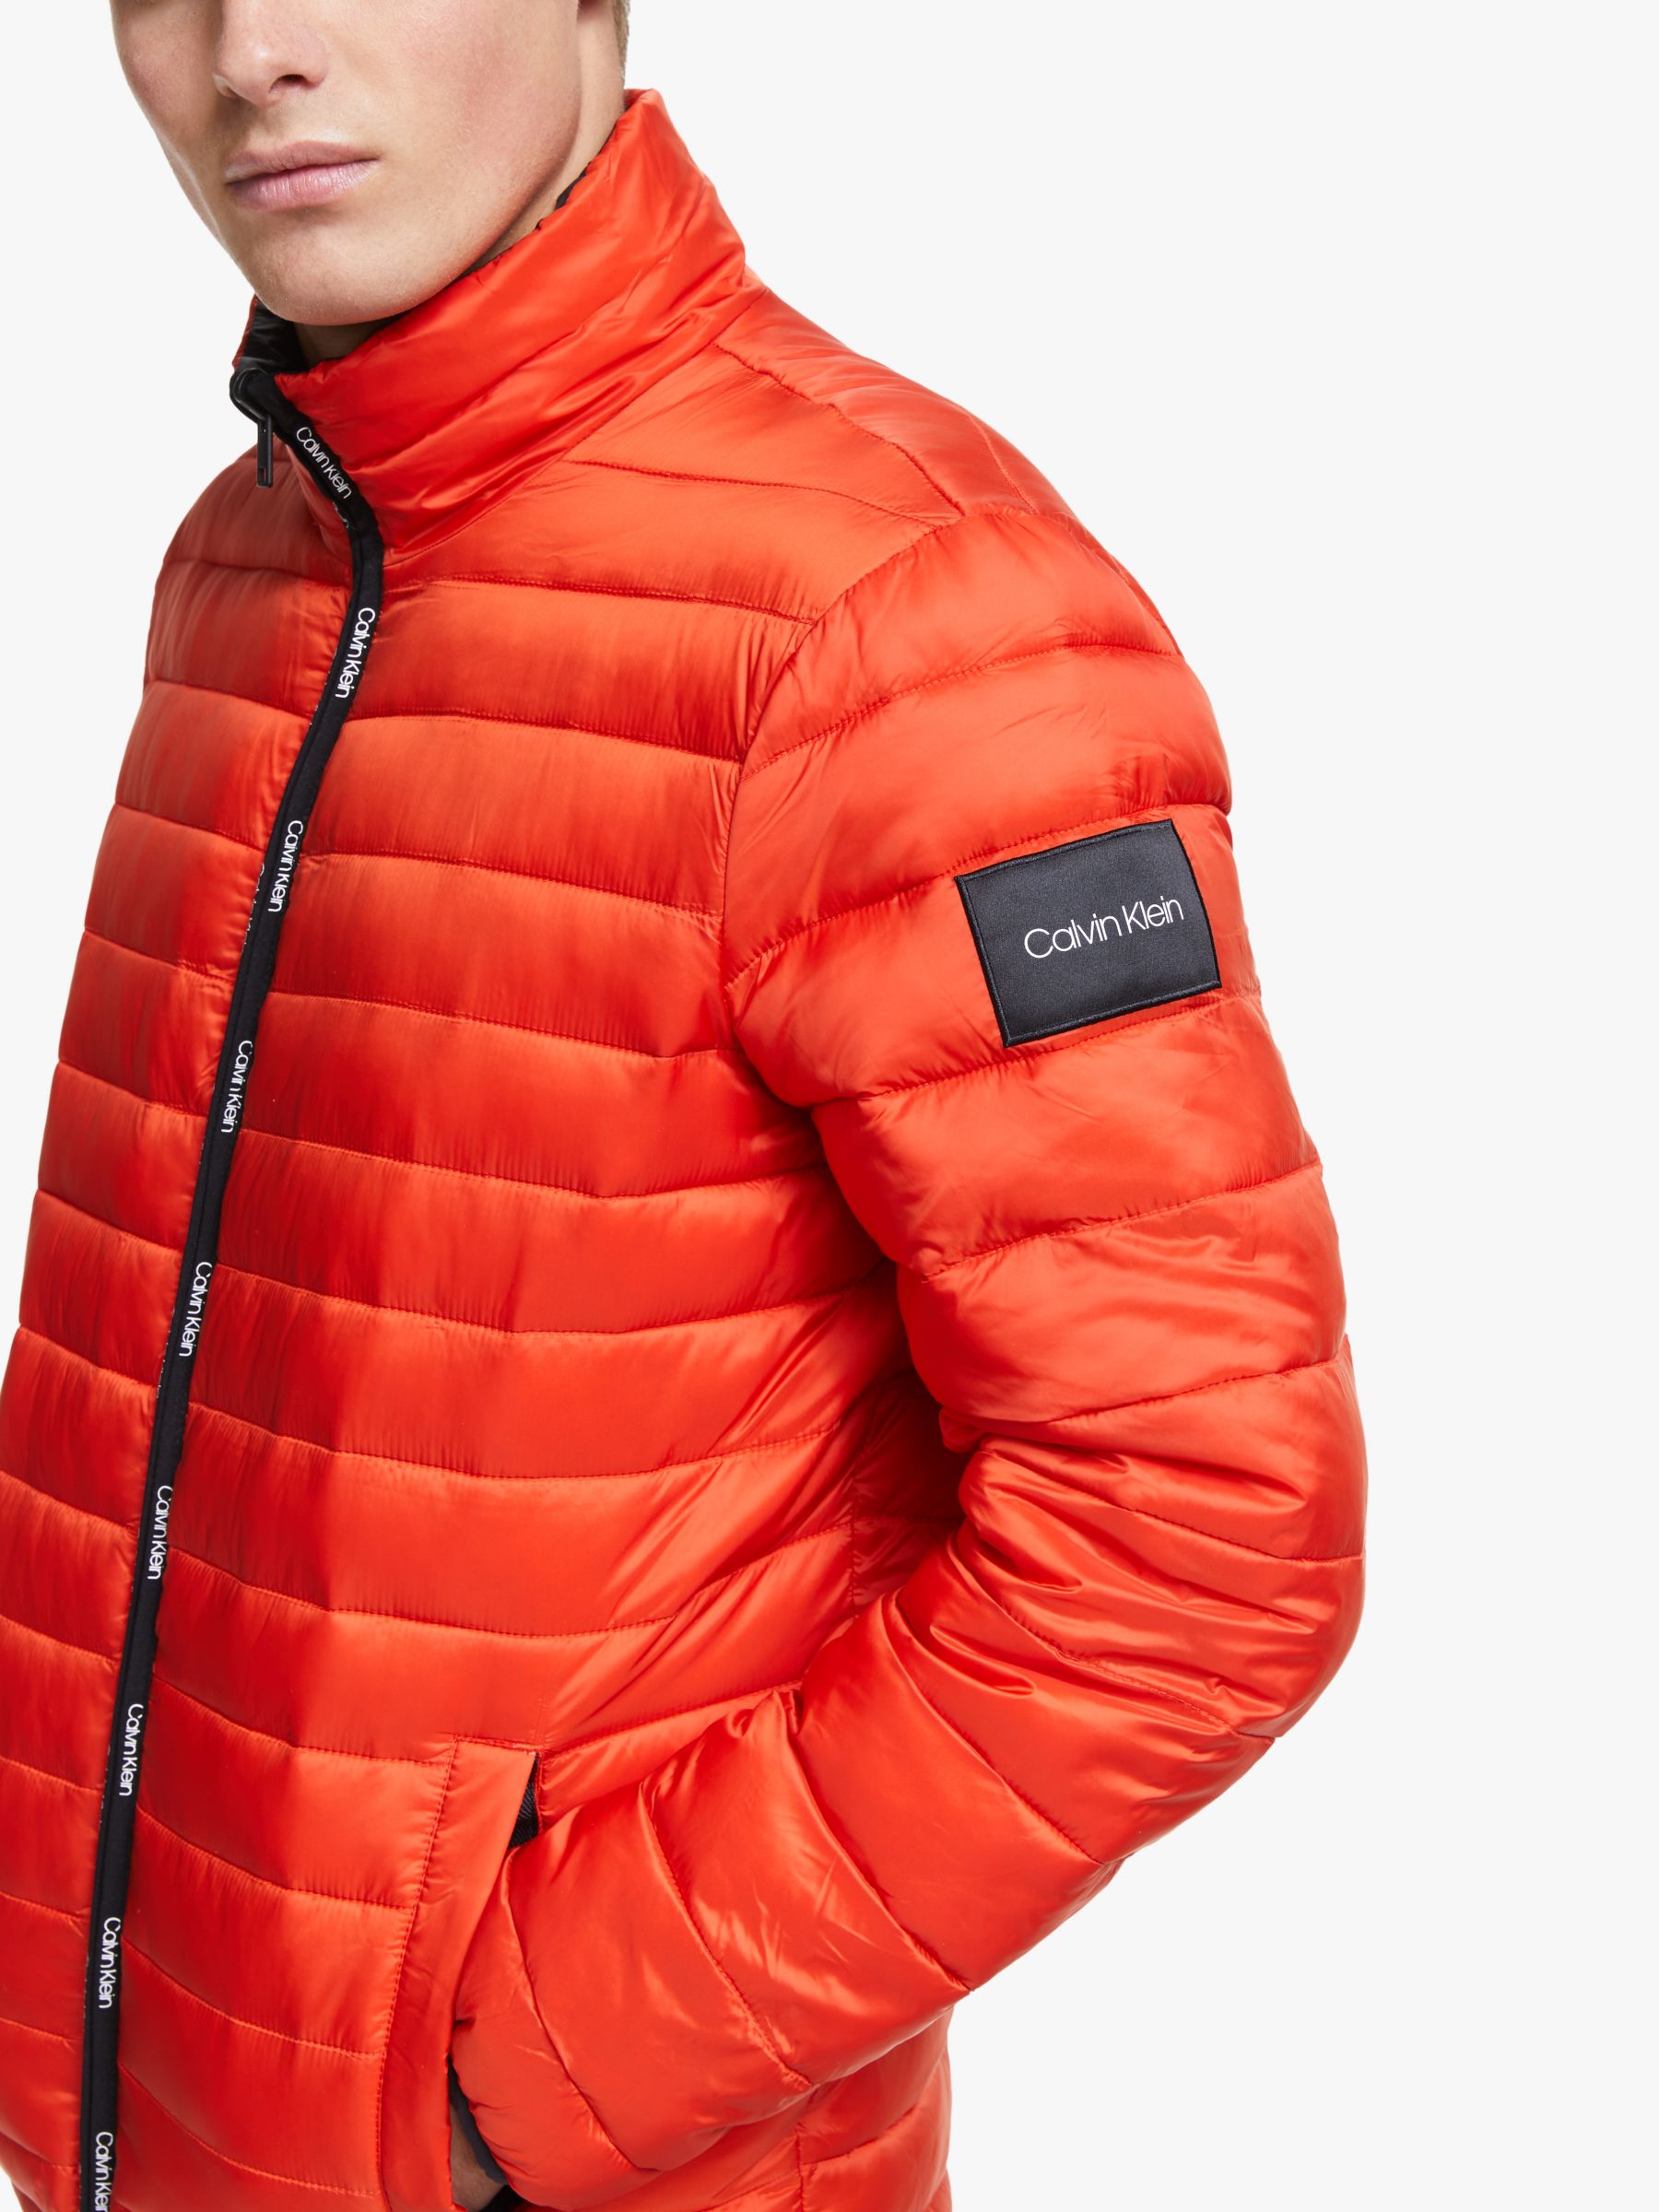 calvin klein orange jacket